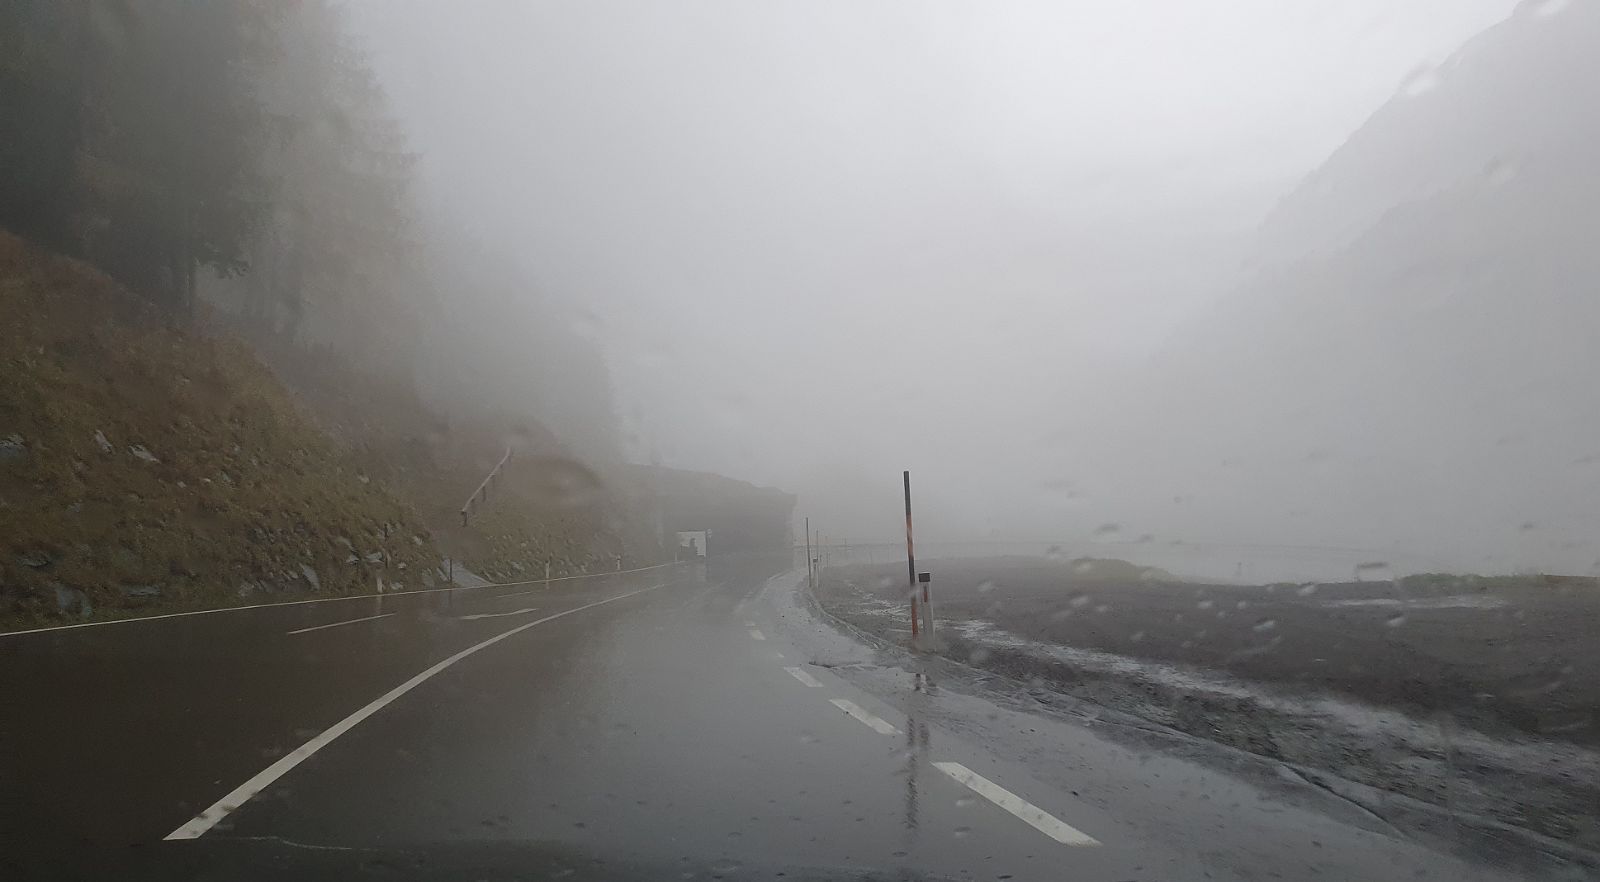 002-dag-1-02-onderweg.jpg - Na de tunnel worden we verwelkomd door mist en regen.